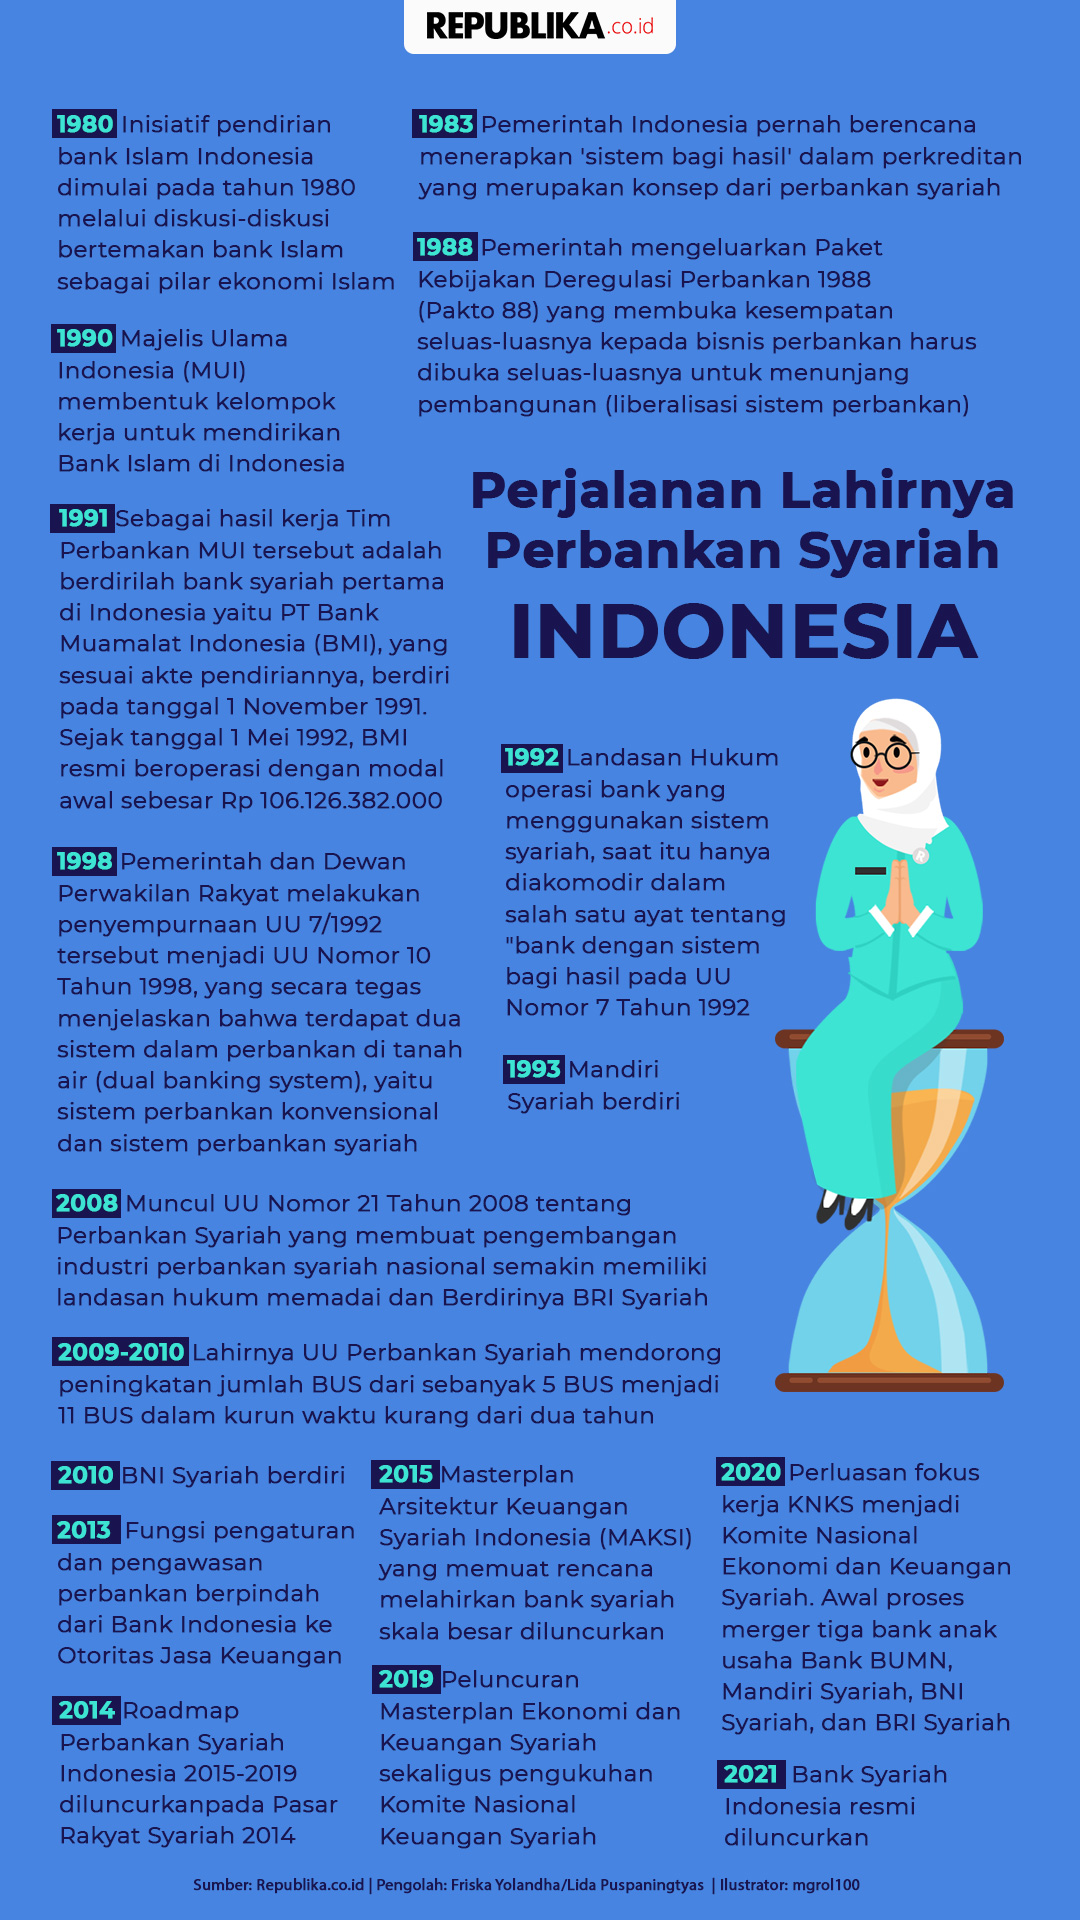 Sejarah Perbankan Syariah Di Indonesia - Content